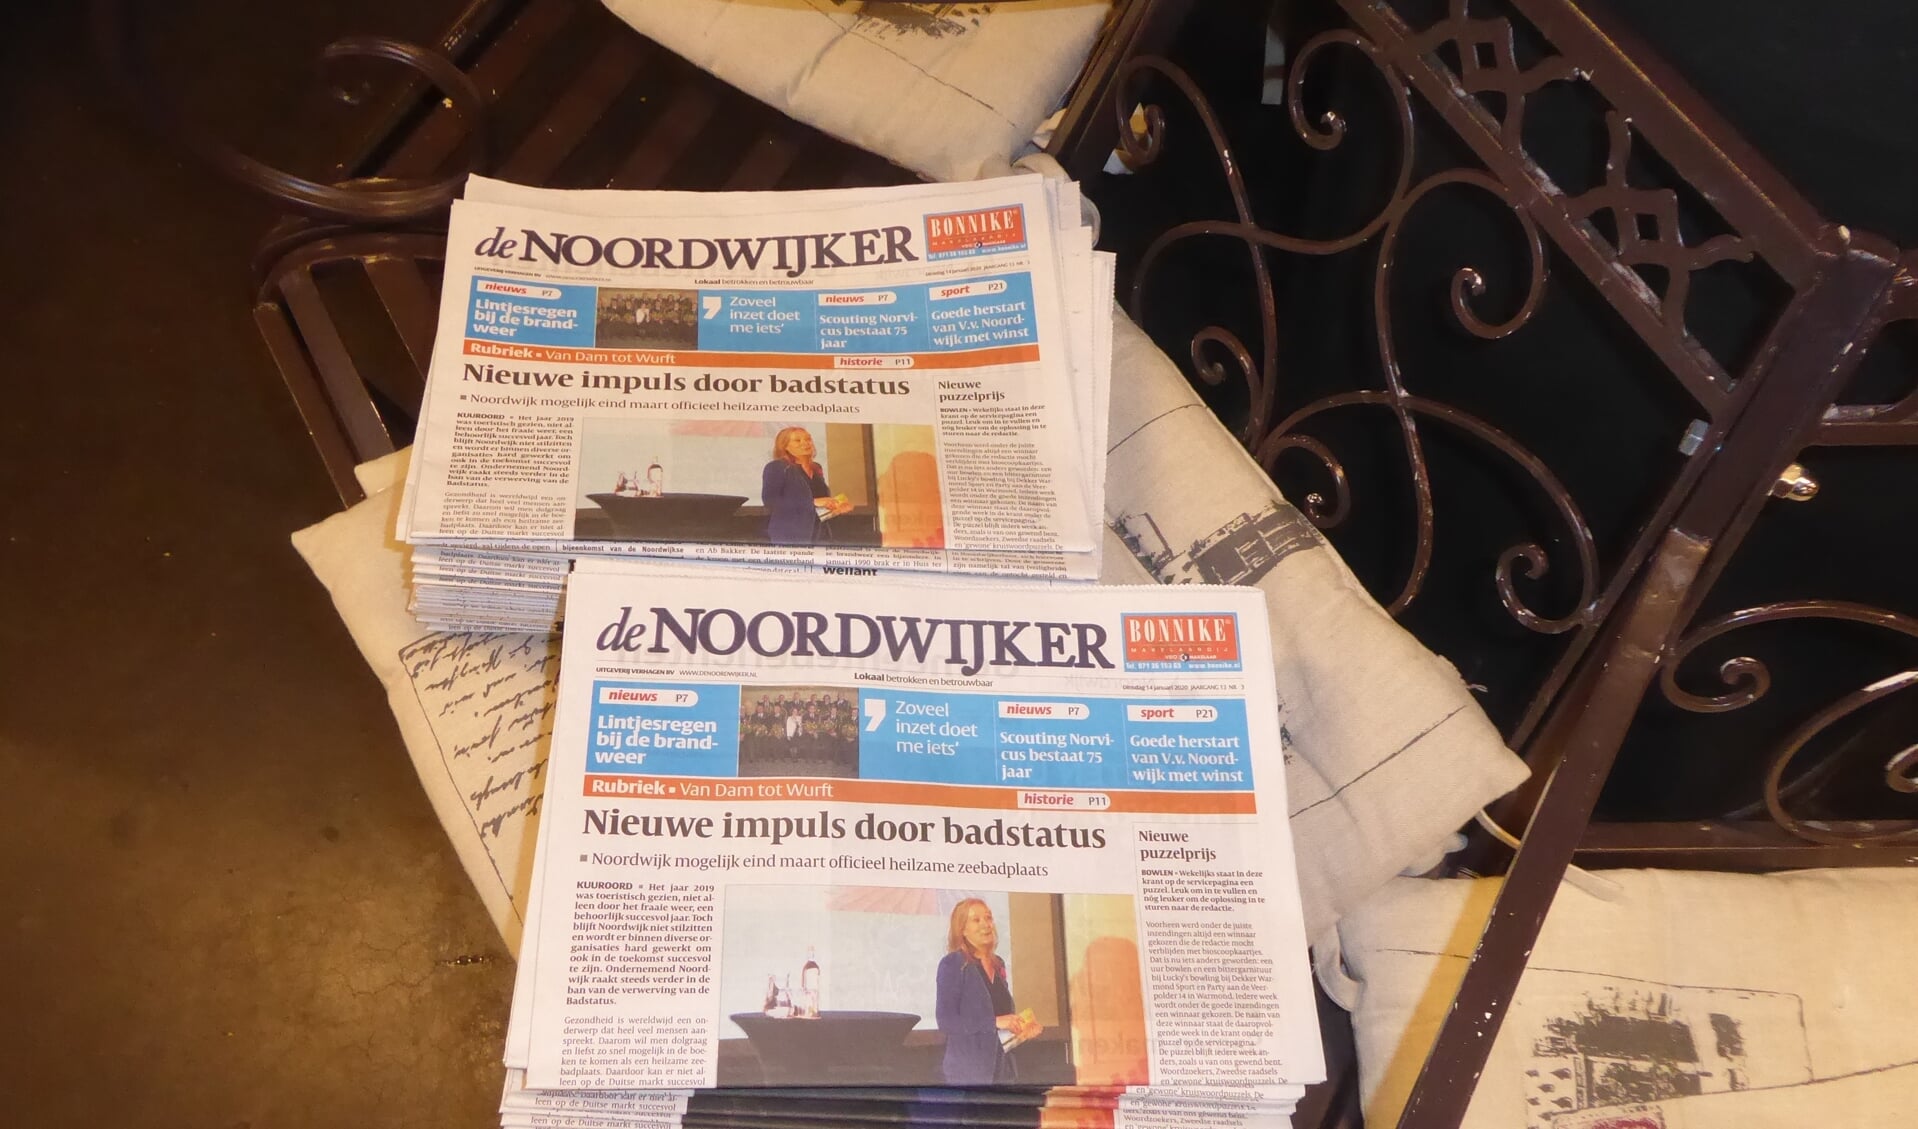 Het aantal plekken waar De Noordwijker vanaf woensdagmiddag is af te halen is verdubbeld. | Foto: Ina Verblaauw